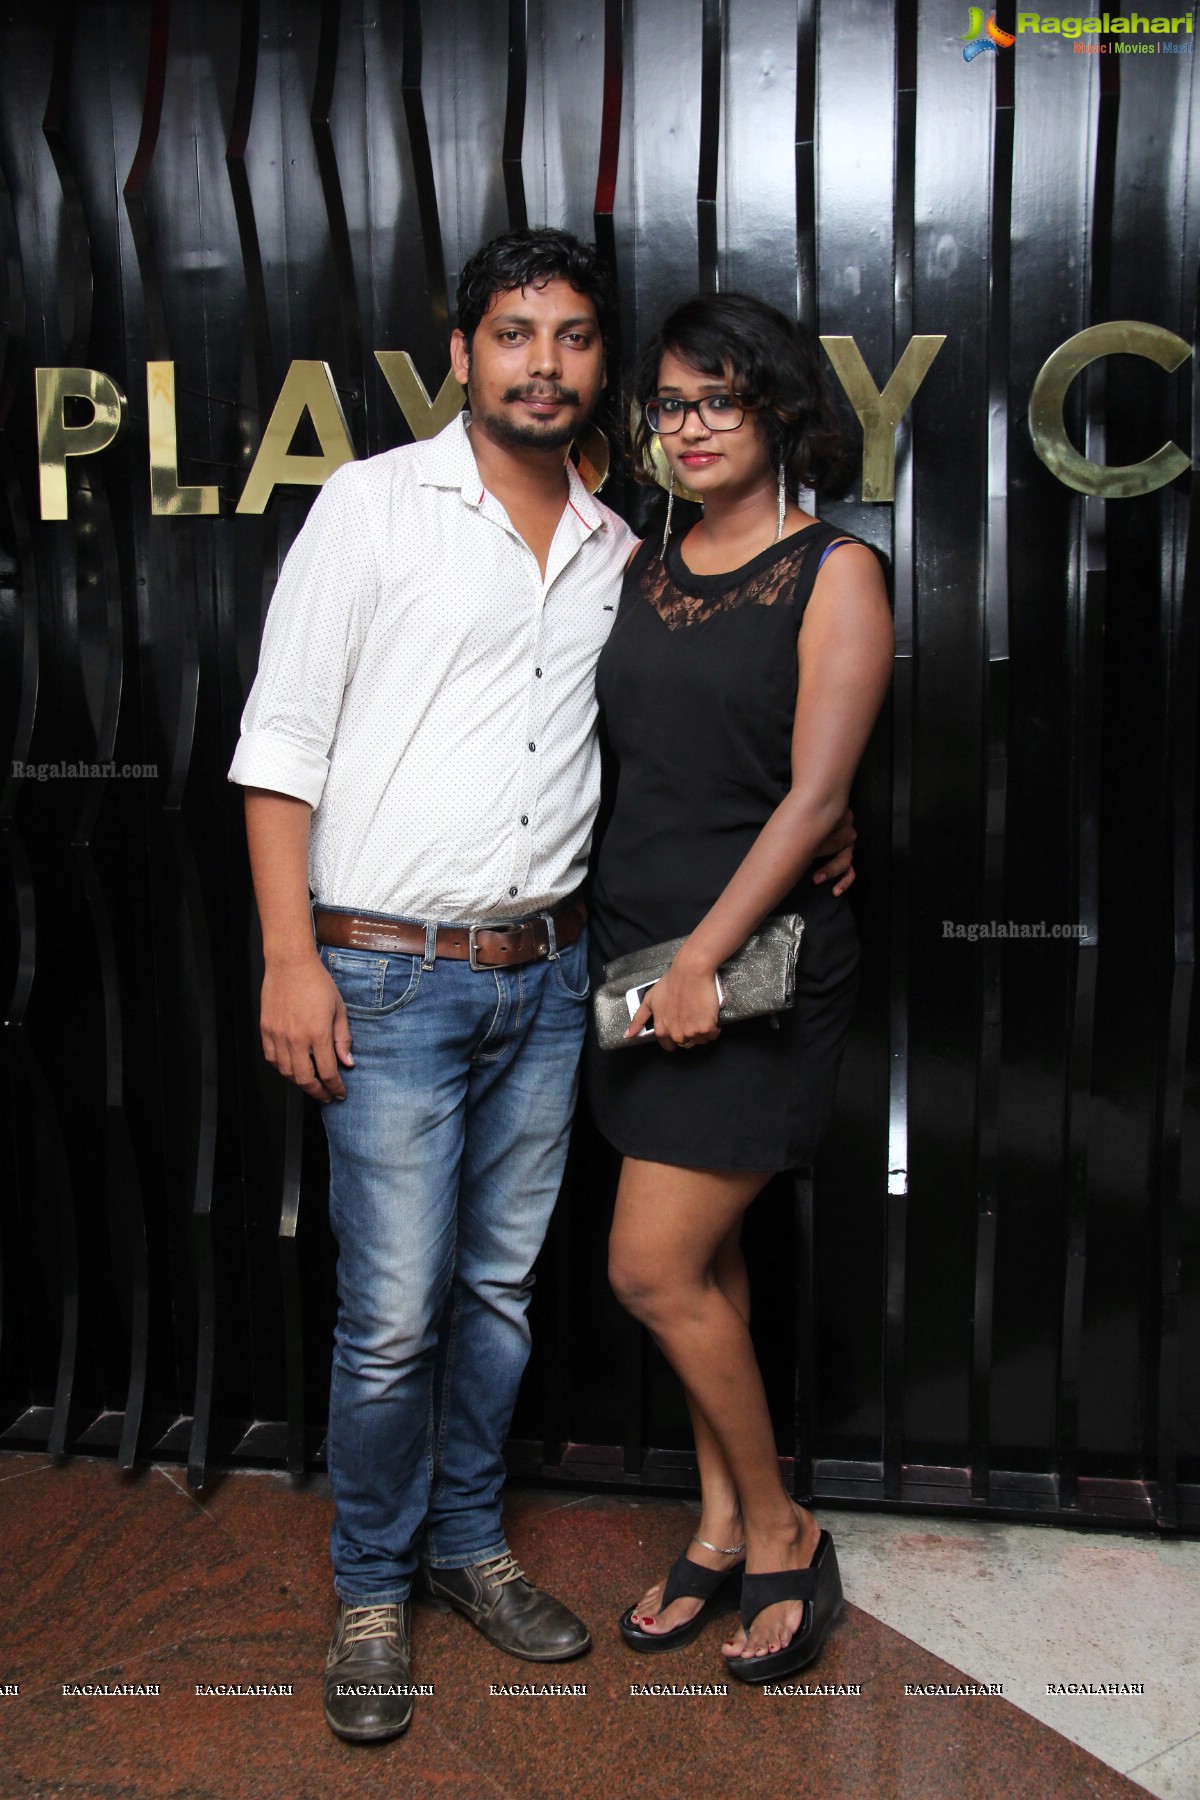 Playboy Club, Hyderabad - May 19, 2016